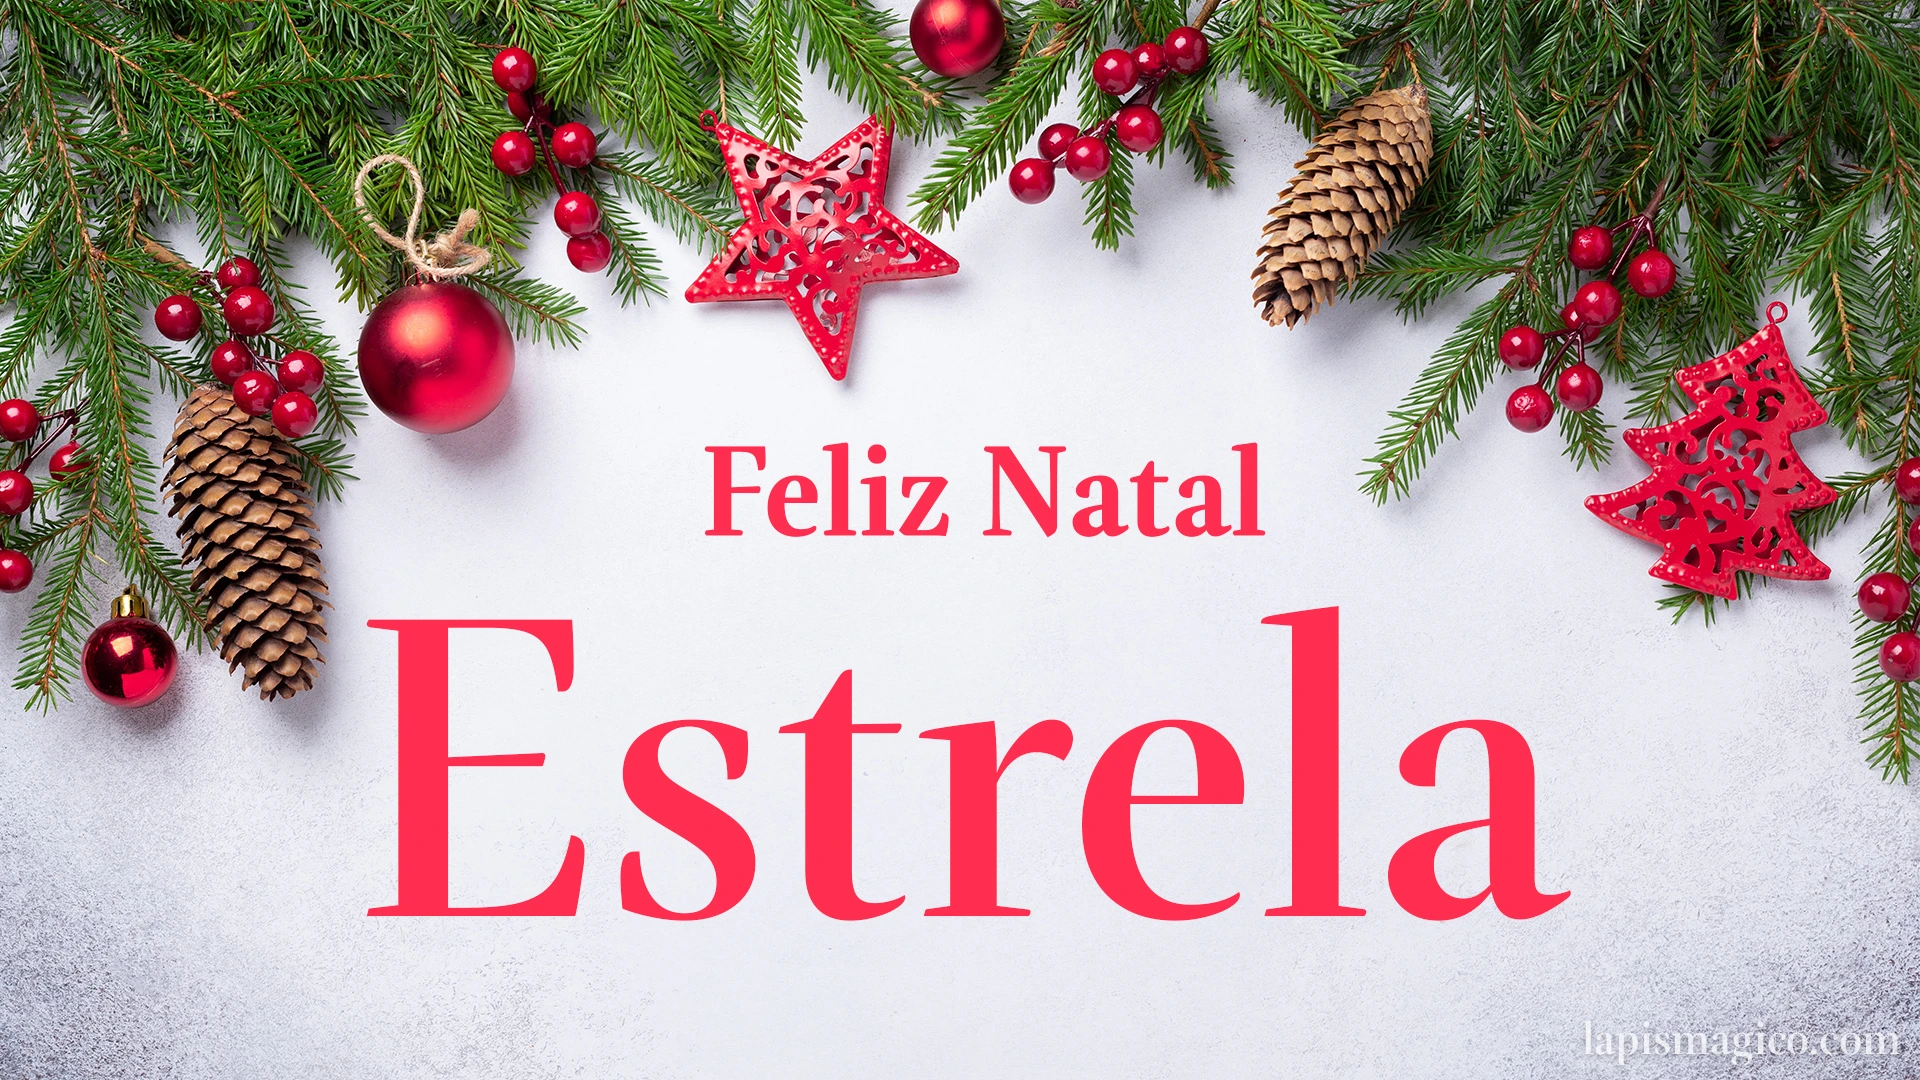 Oh Estrela, cinco postais de Feliz Natal Postal com o teu nome